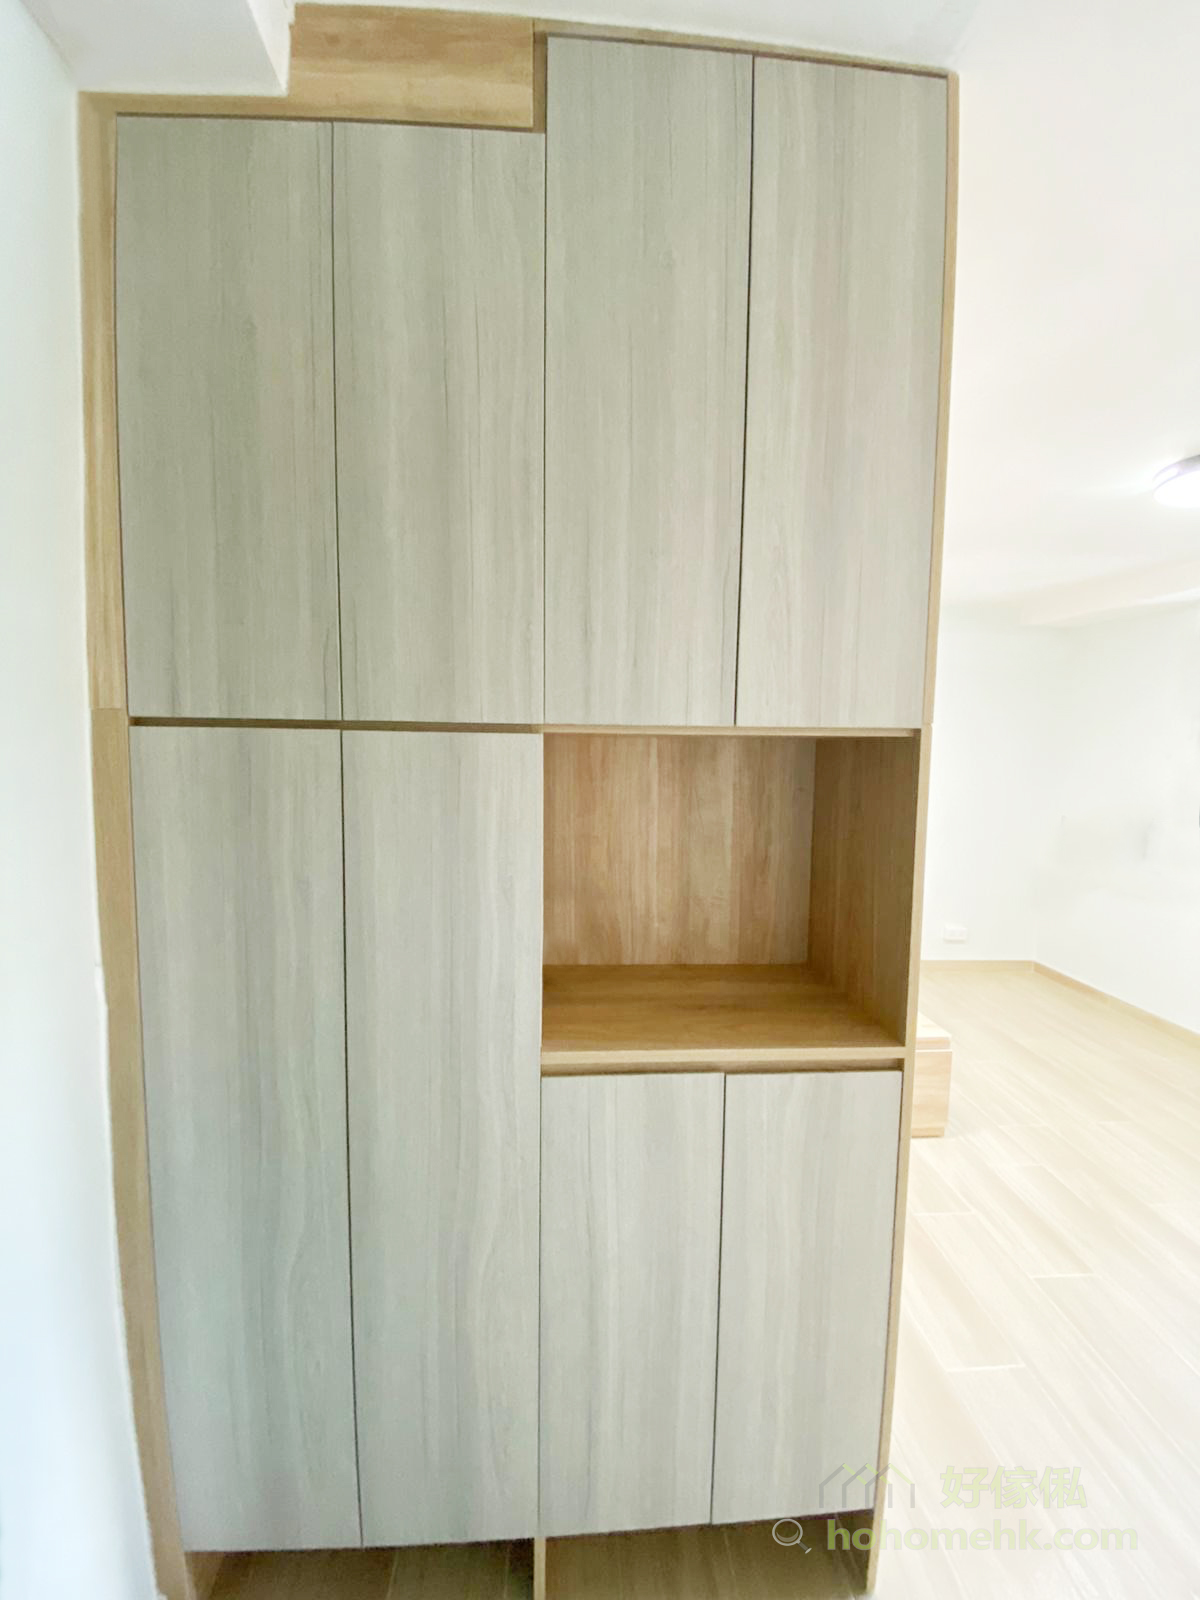 使用同系列的系統櫃貫穿整個空間，空間風格一致令空間感更強，所以衣櫃、地台床和作為間隔的玄關櫃都用上相同的配色會令空間看起來更寬敞、簡約